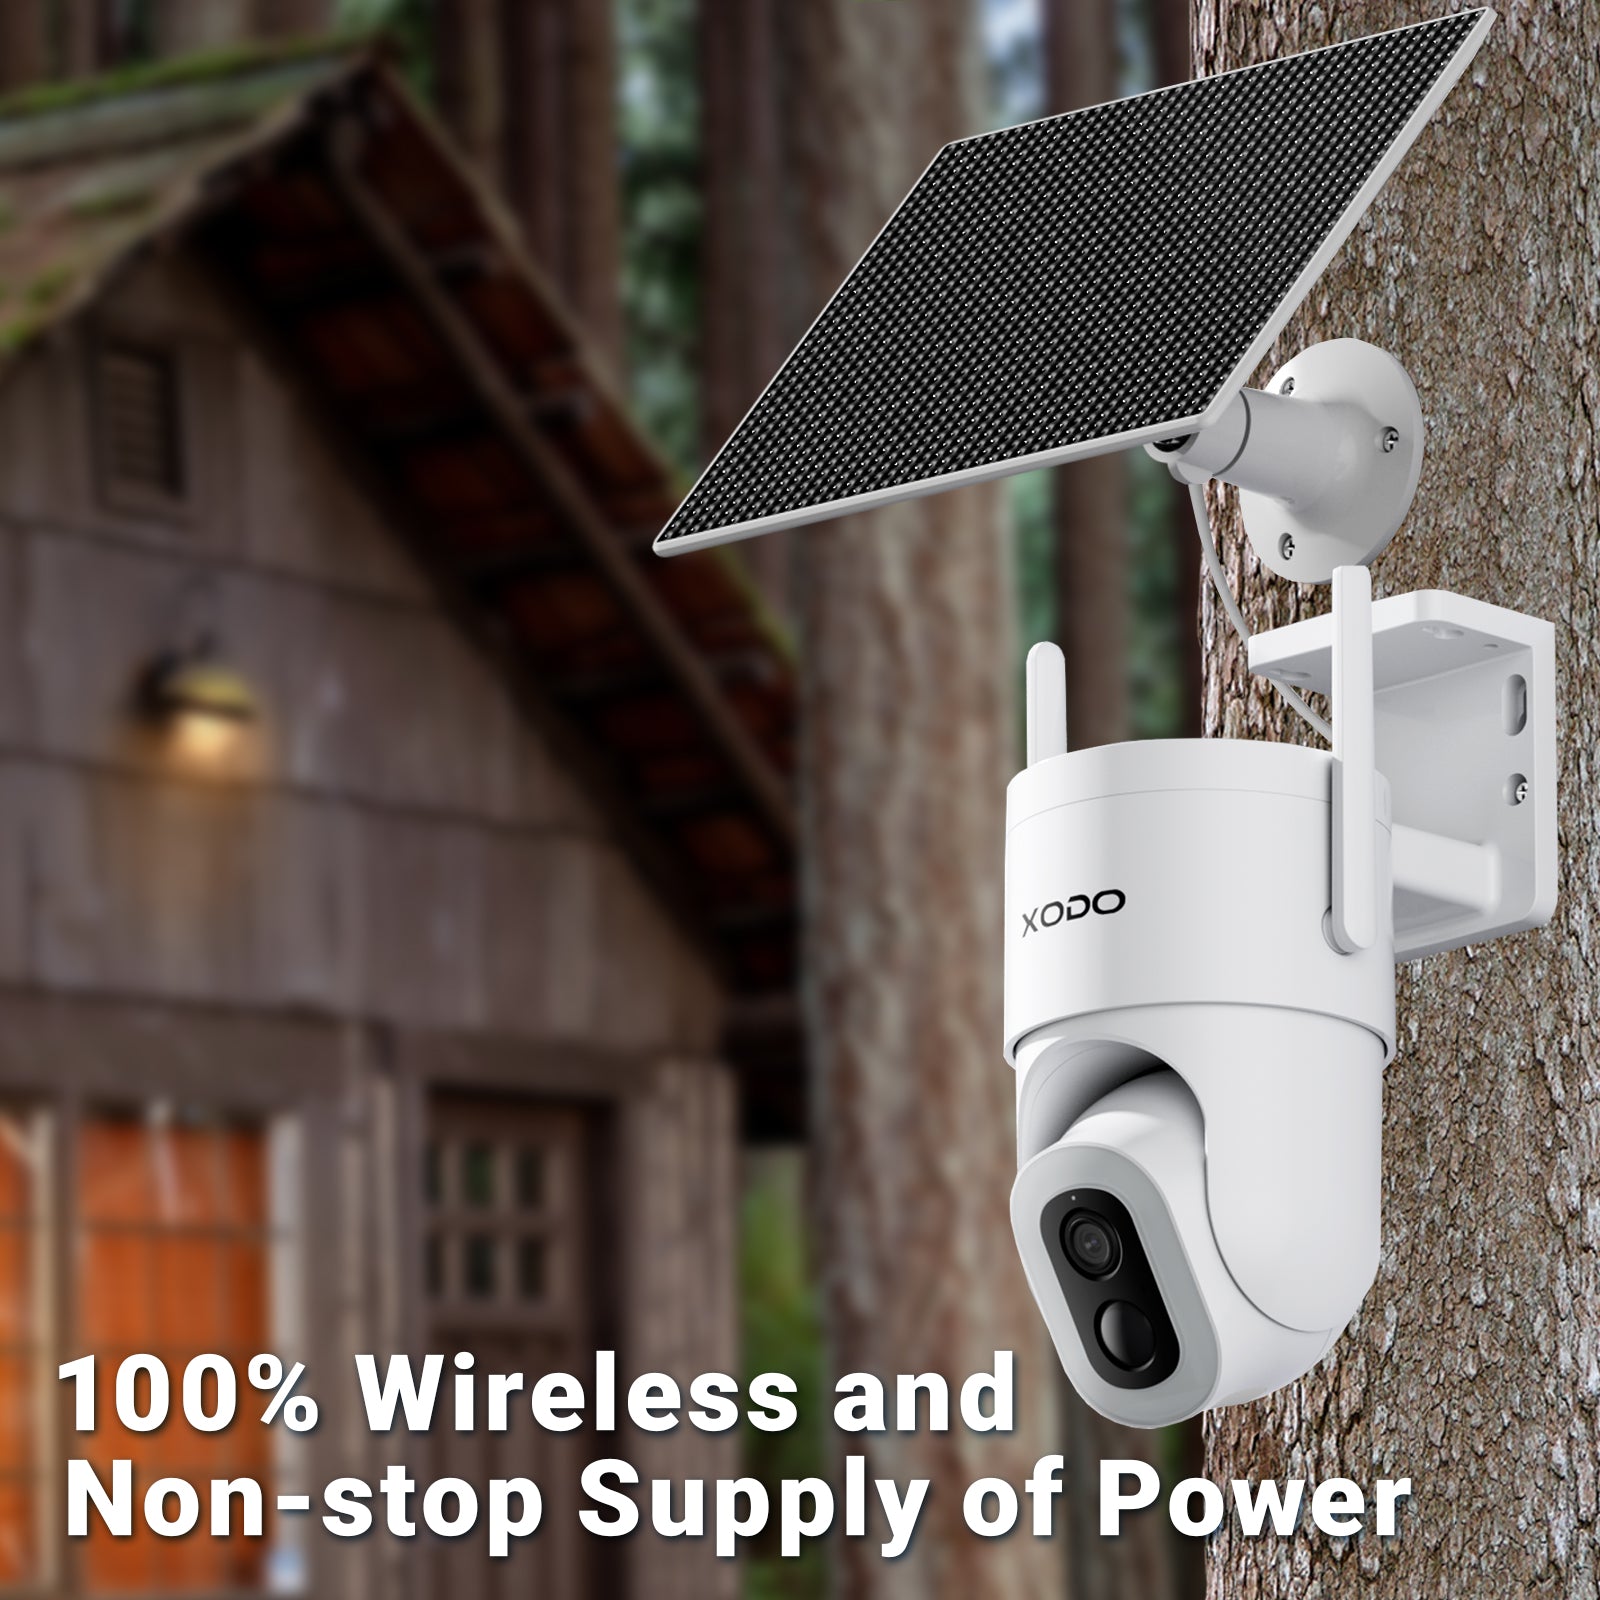 Xodo WP4 Wi-Fi Smart Home Power Strip with USB Ports